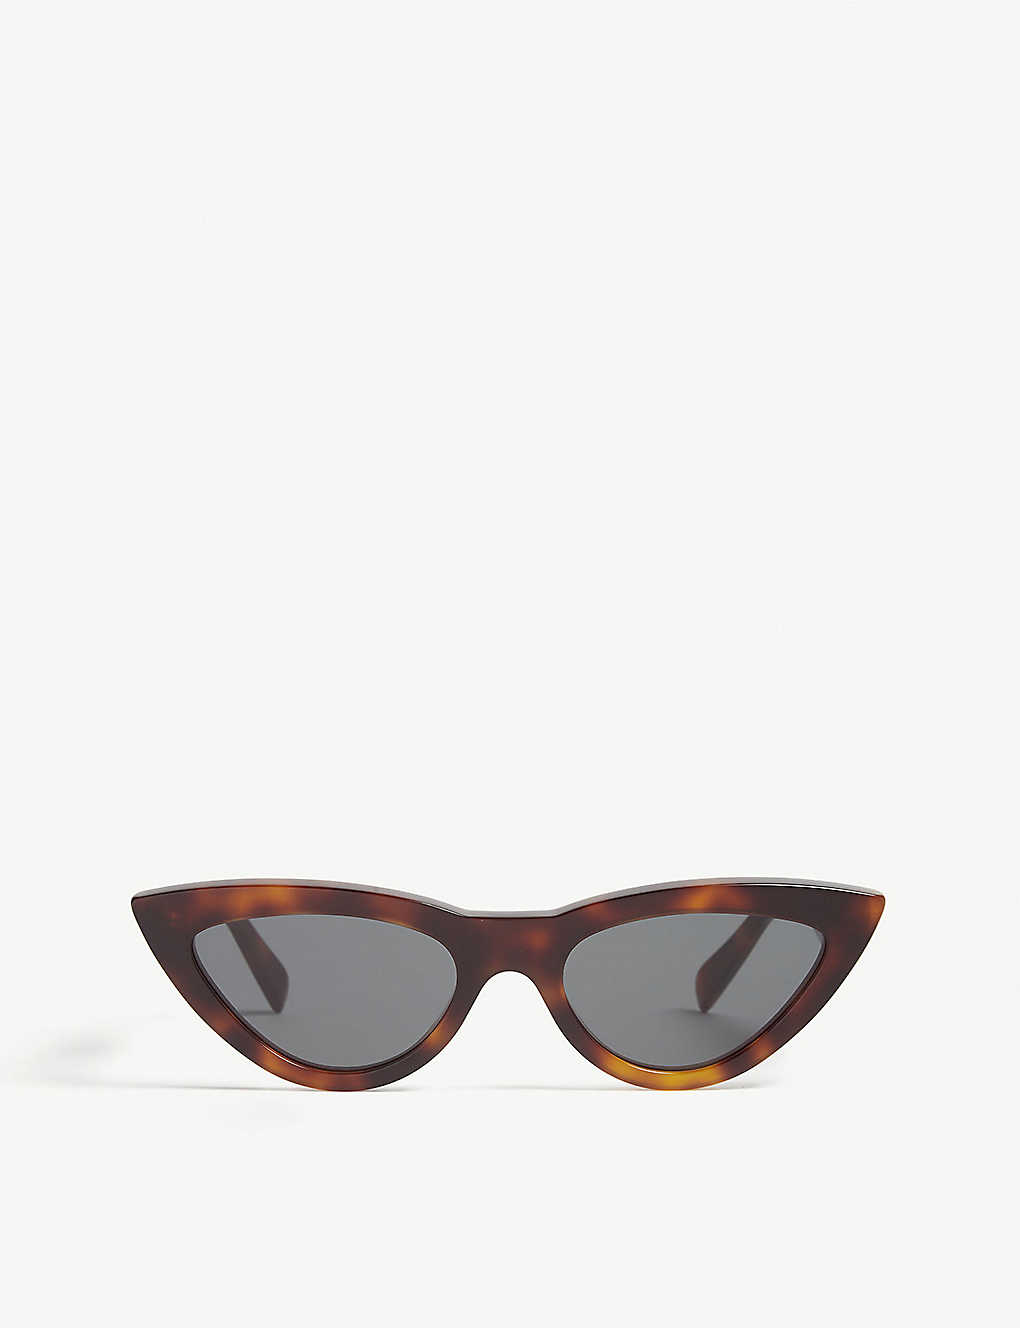 Cl4019 cat eye-frame sunglasses(7759738)